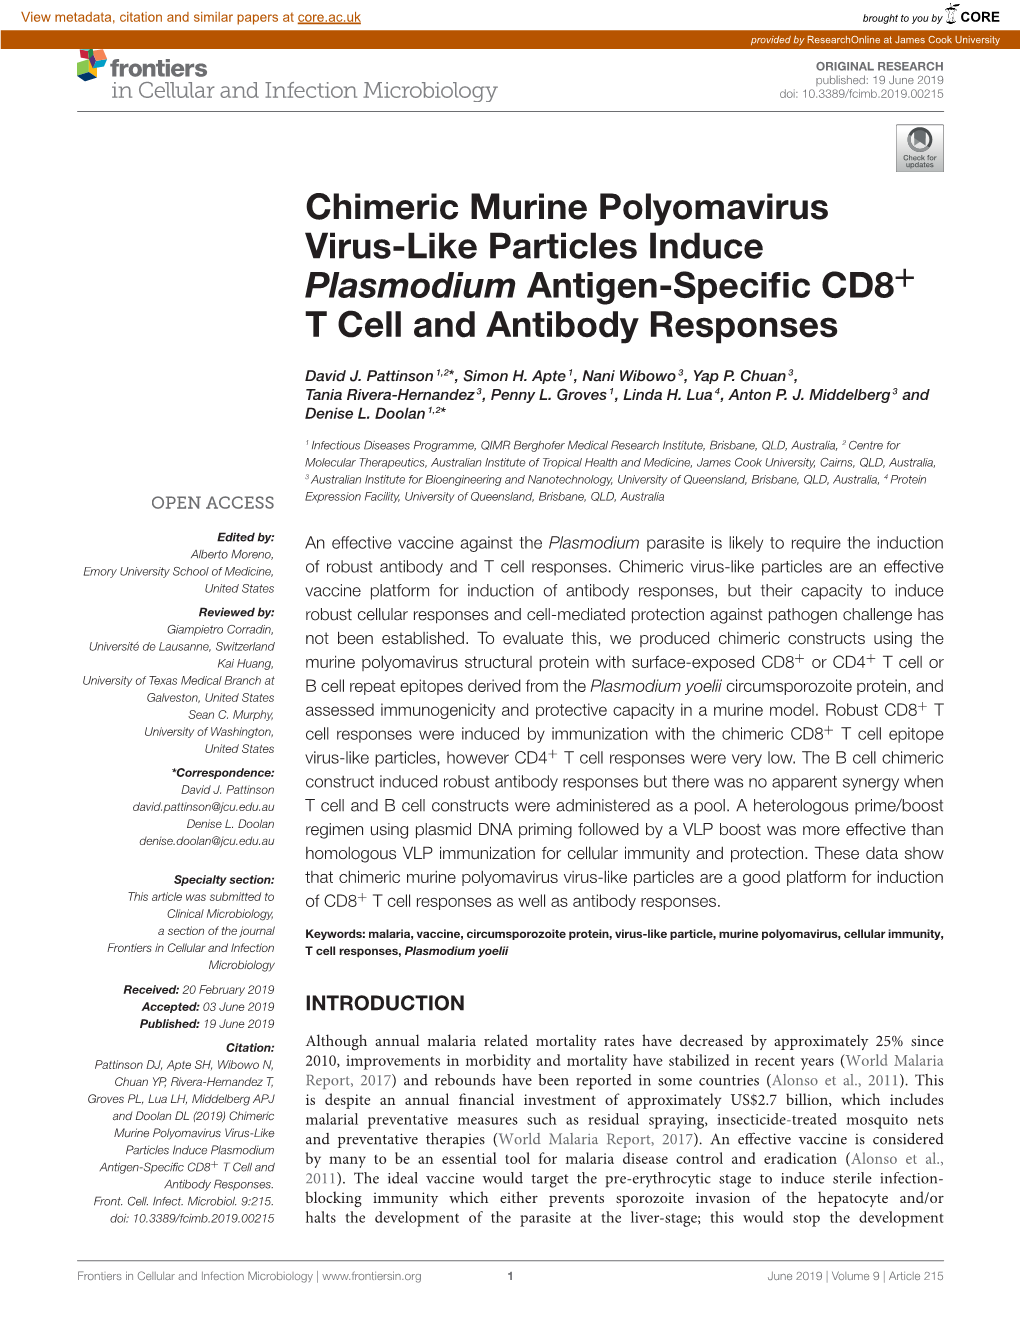 Chimeric Murine Polyomavirus Virus-Like Particles Induce Plasmodium Antigen-Speciﬁc CD8+ T Cell and Antibody Responses